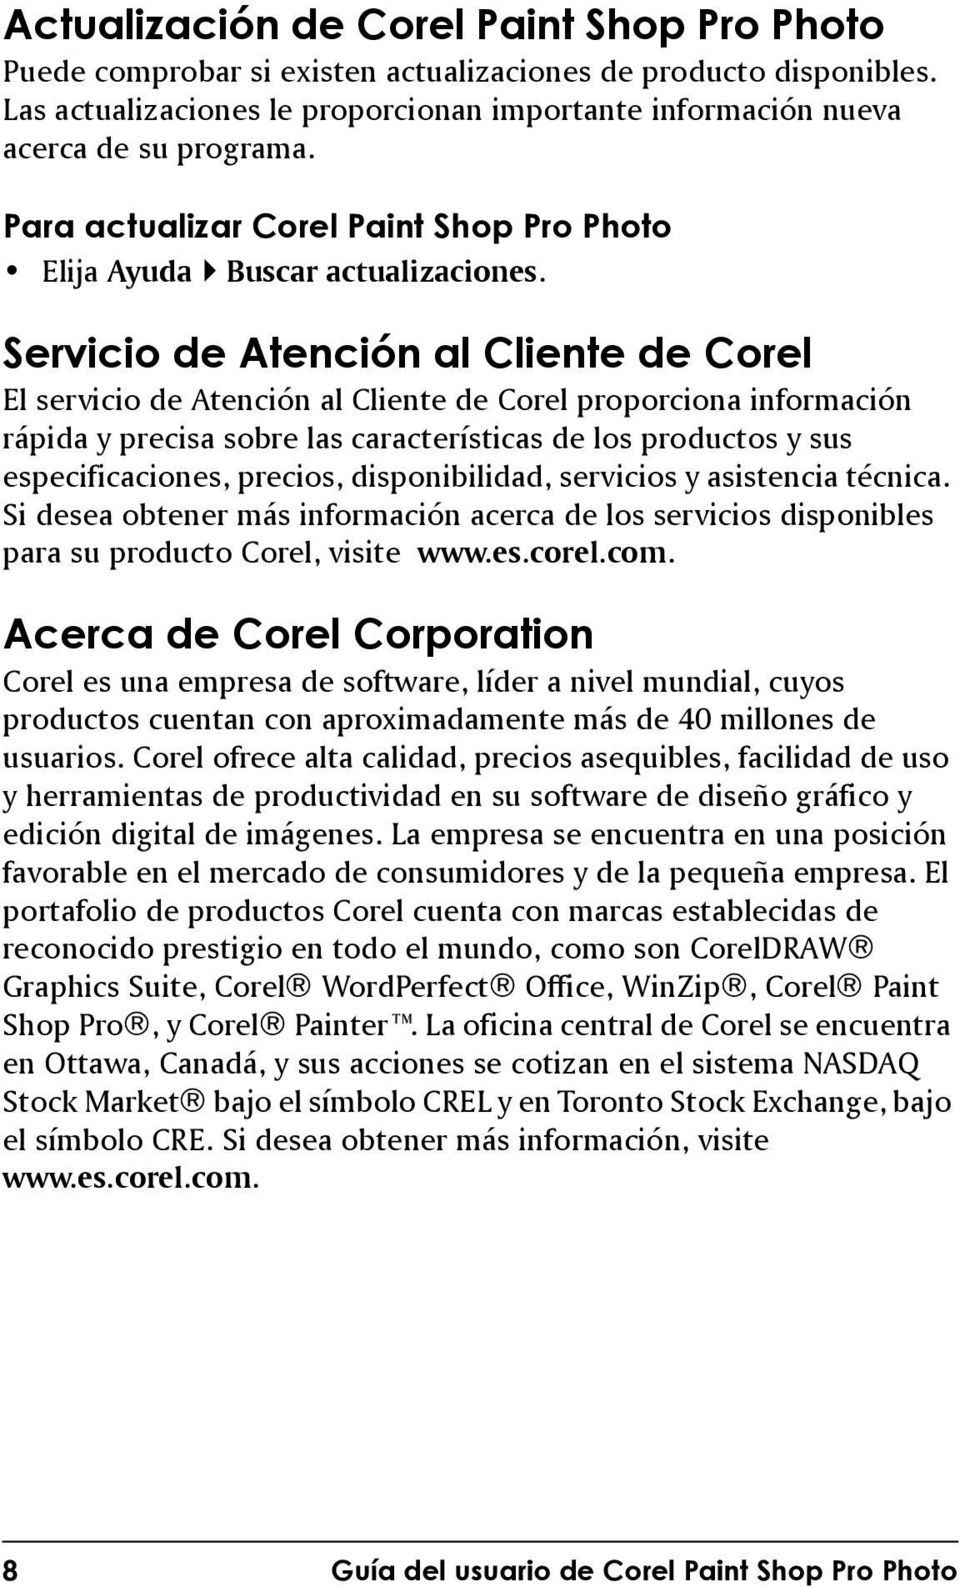 Servicio de Atención al Cliente de Corel El servicio de Atención al Cliente de Corel proporciona información rápida y precisa sobre las características de los productos y sus especificaciones,